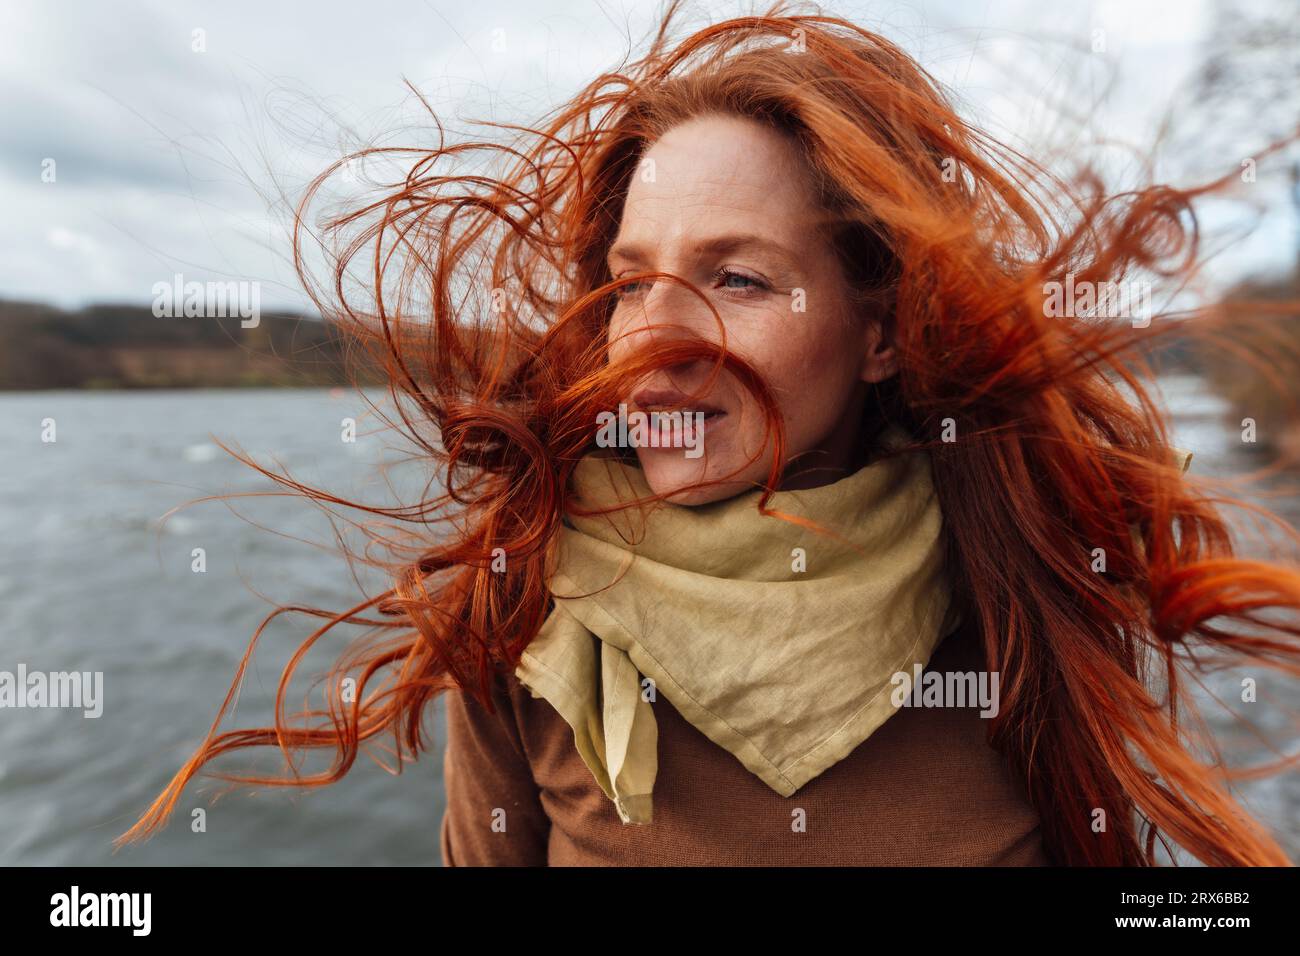 Rothaarige Frau mit im Wind wehenden Haaren Stockfoto